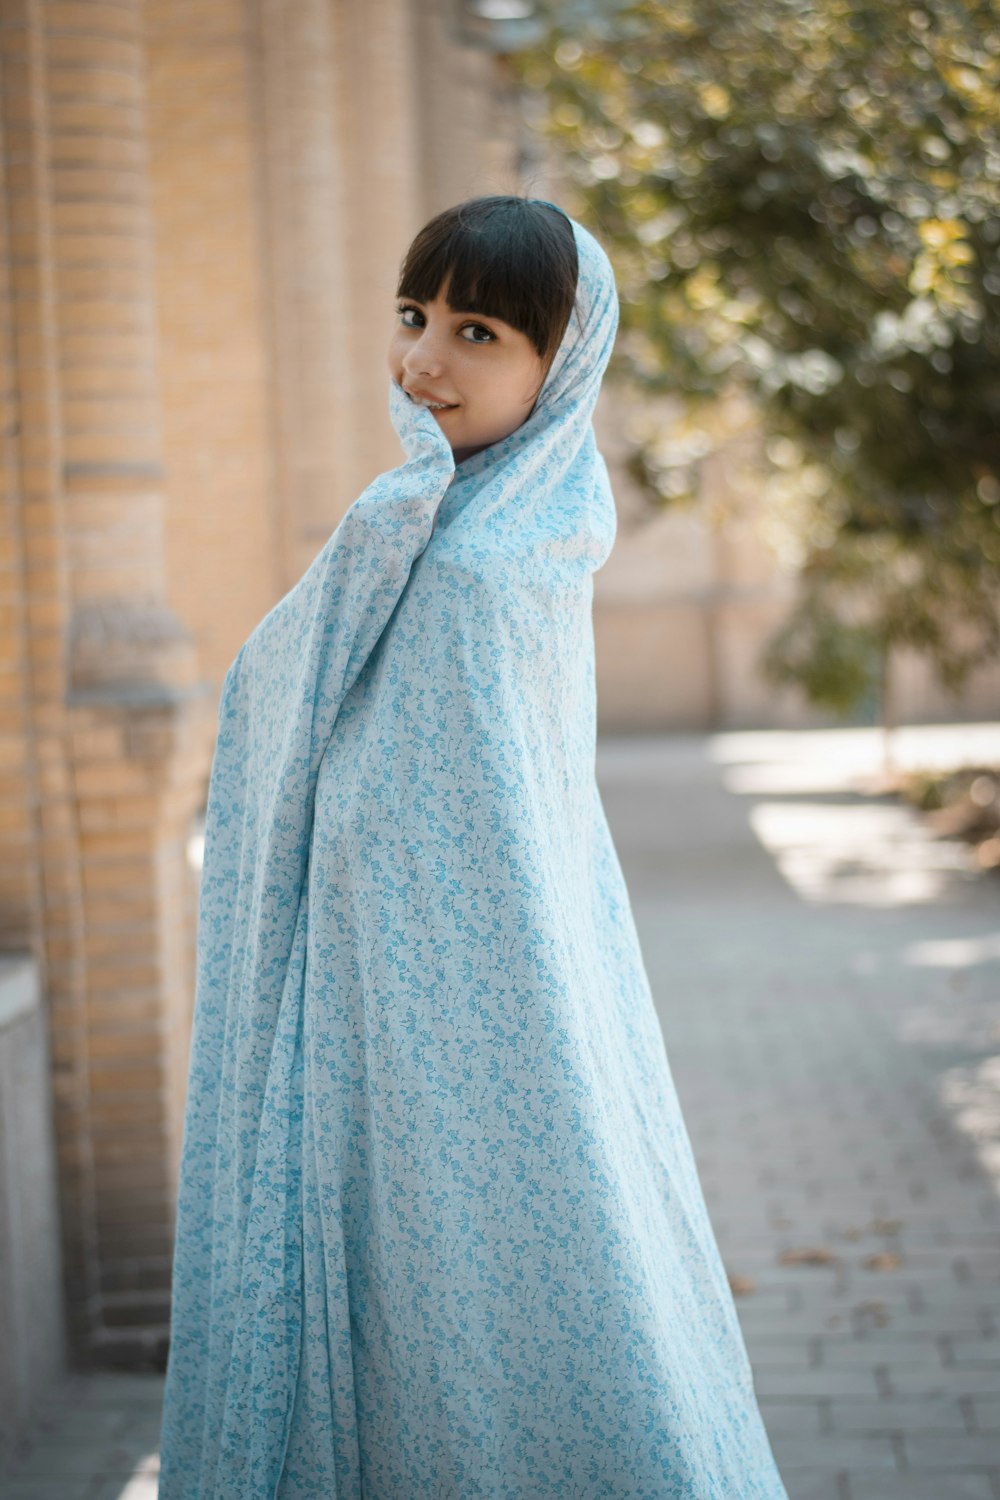 fille en hijab bleu debout sur le trottoir pendant la journée